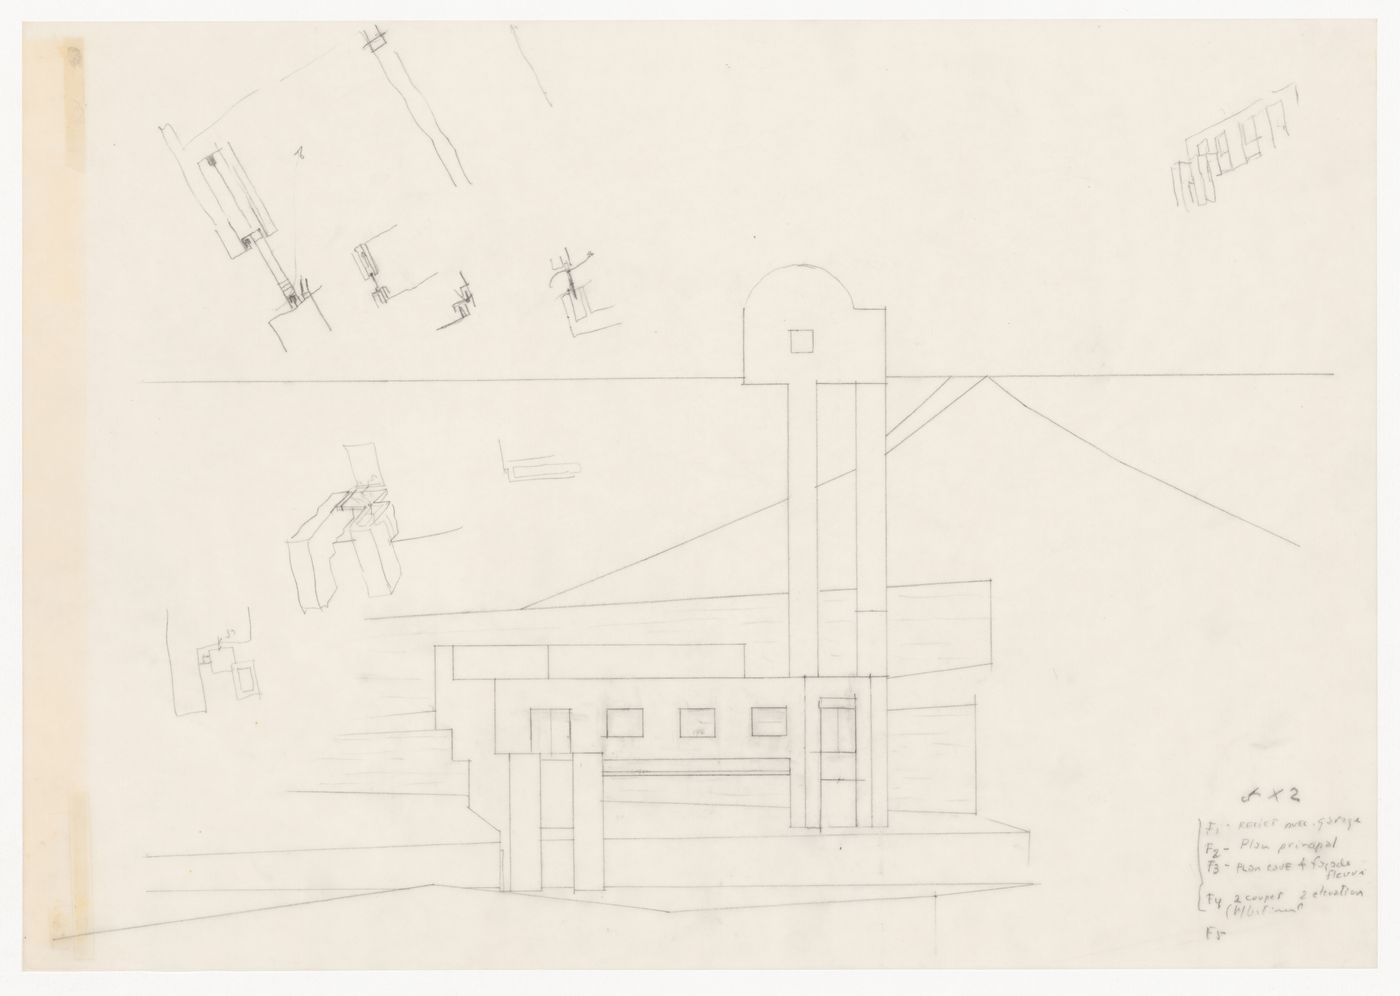 Elevation with sketches and notes for Casa Mário Bahia [Mário Bahia house], Gondomar, Portugal